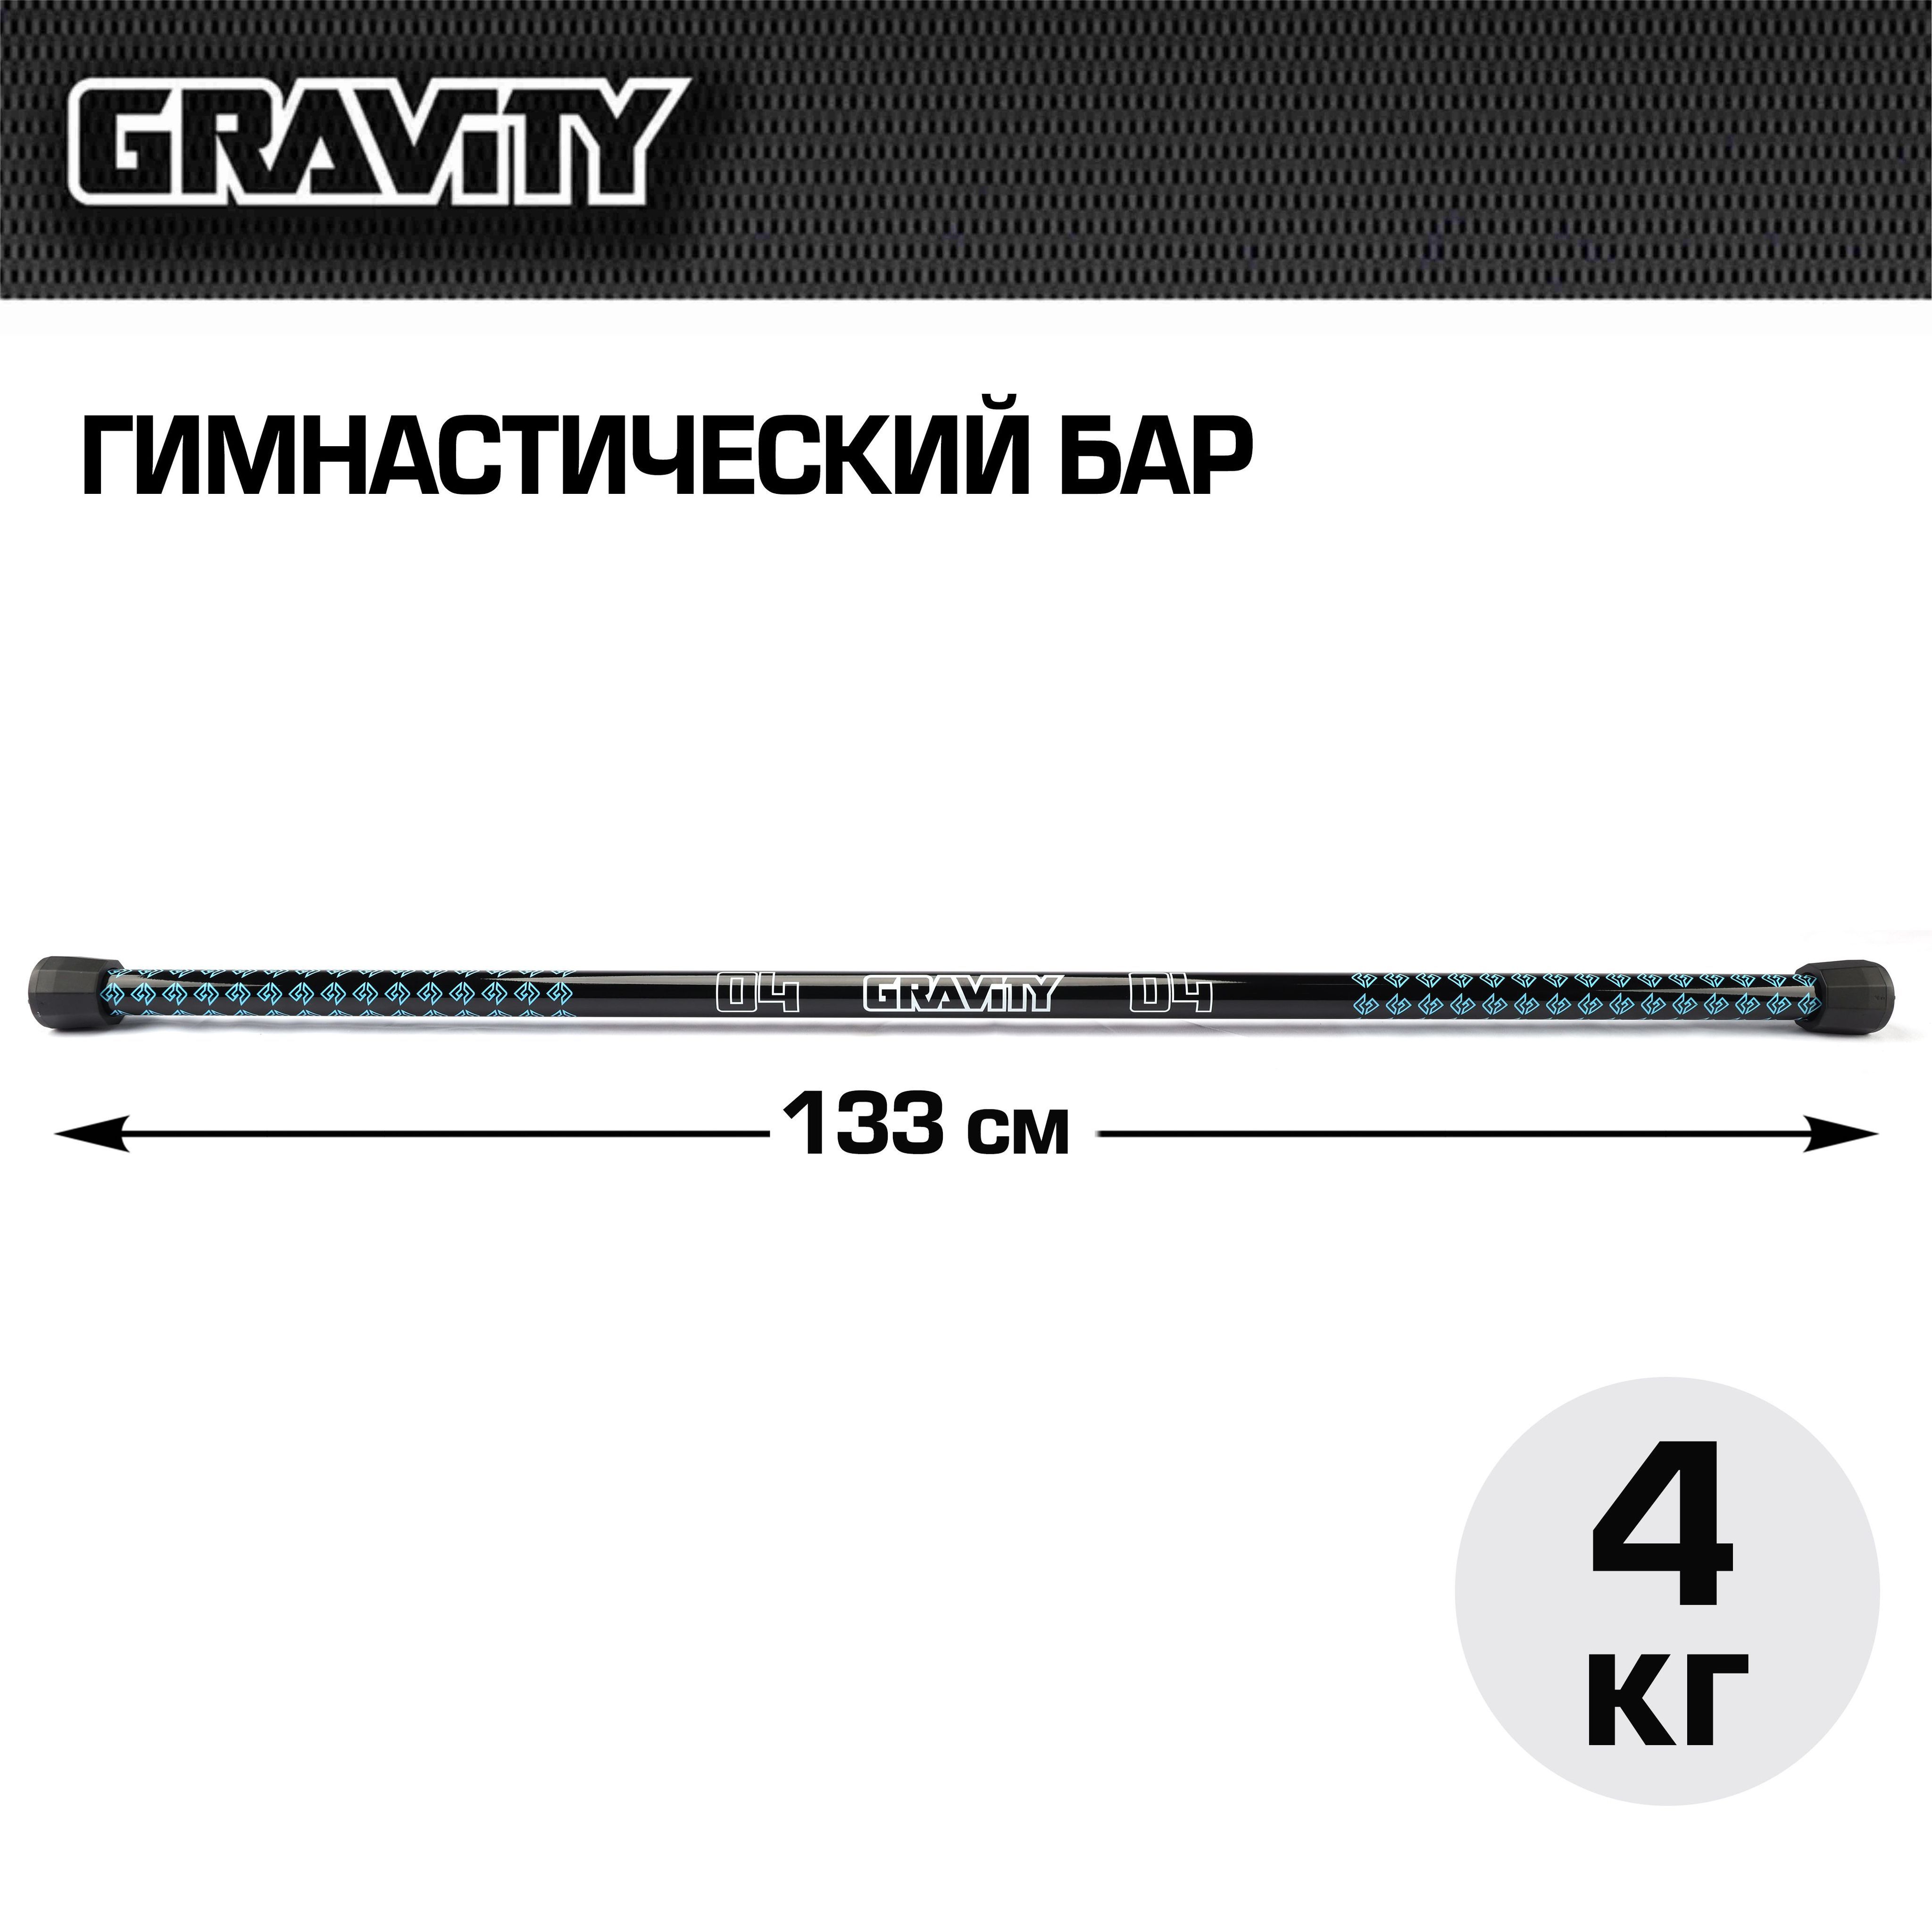 Гимнастический бар Gravity, 4 кг